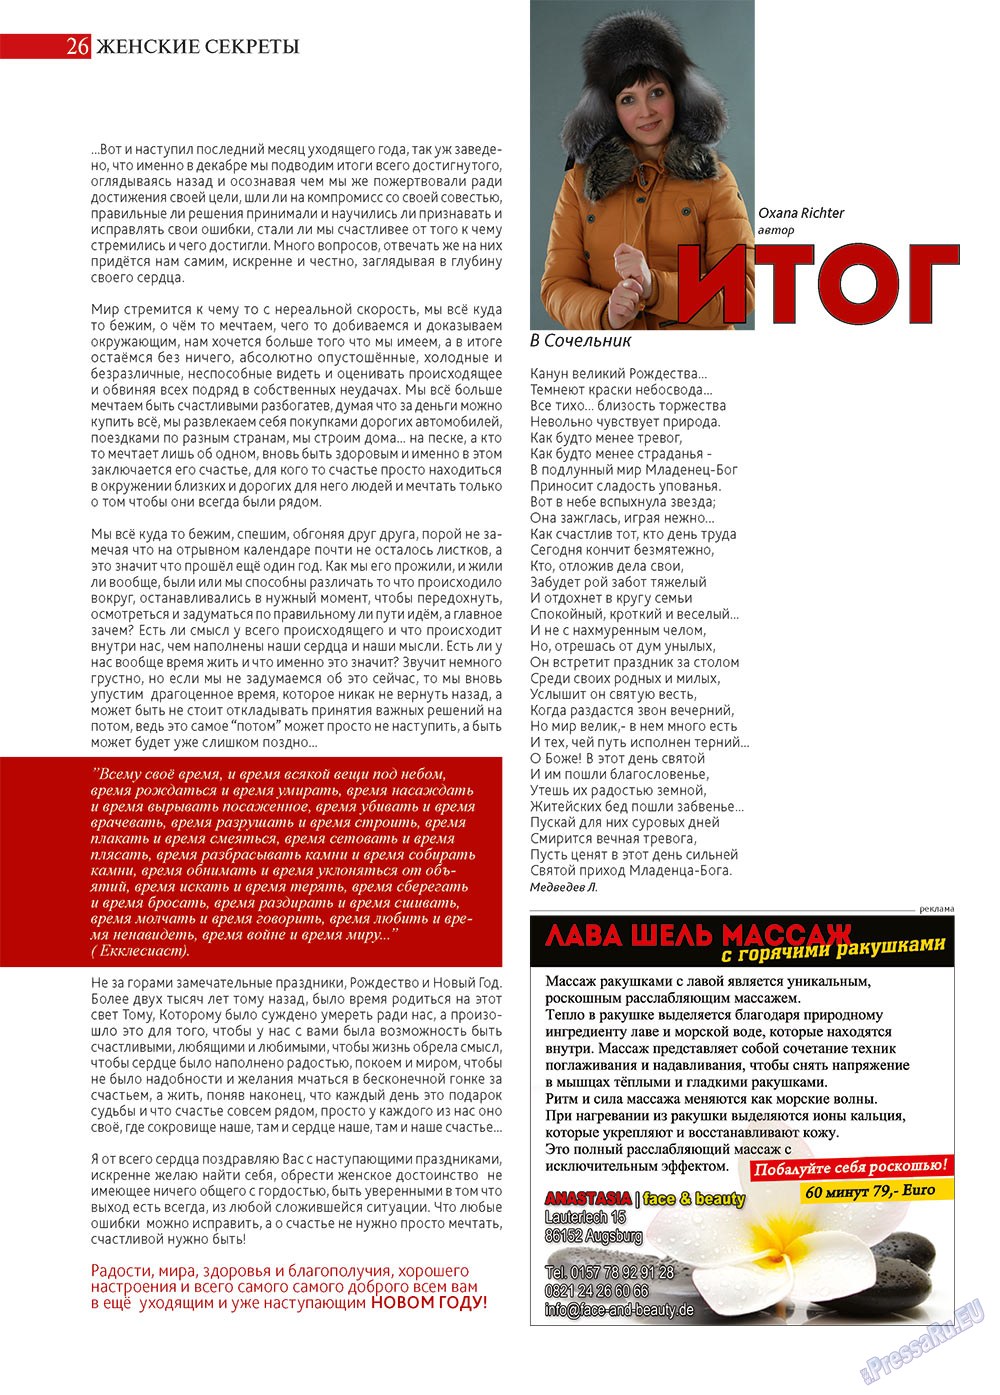 Афиша Augsburg, журнал. 2012 №12 стр.26